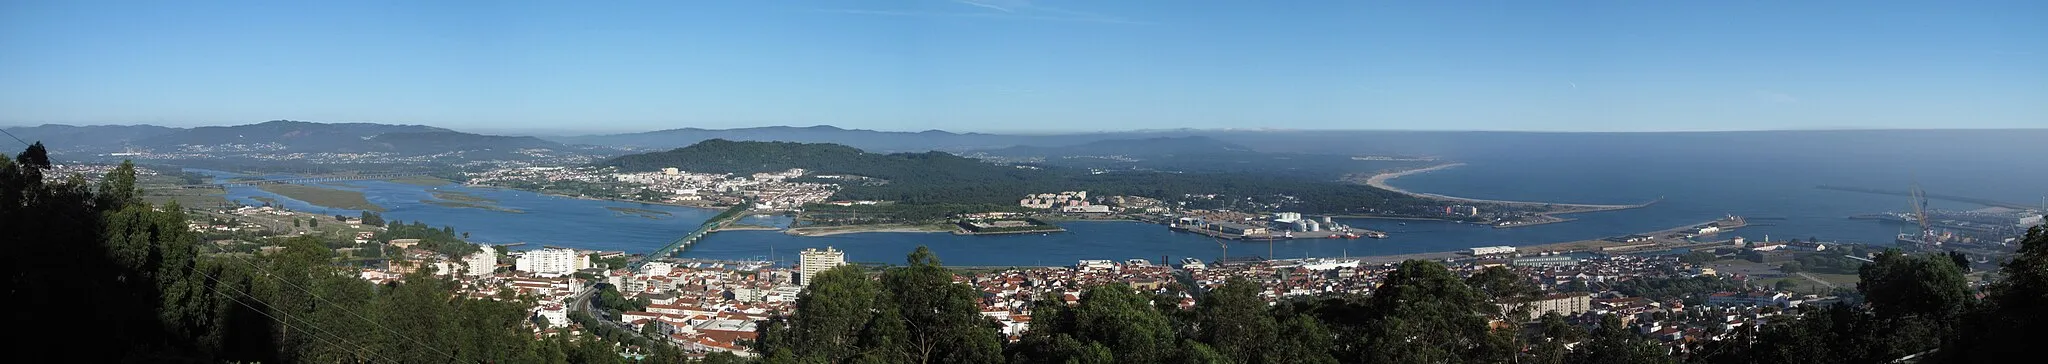 Imagem de Viana do Castelo